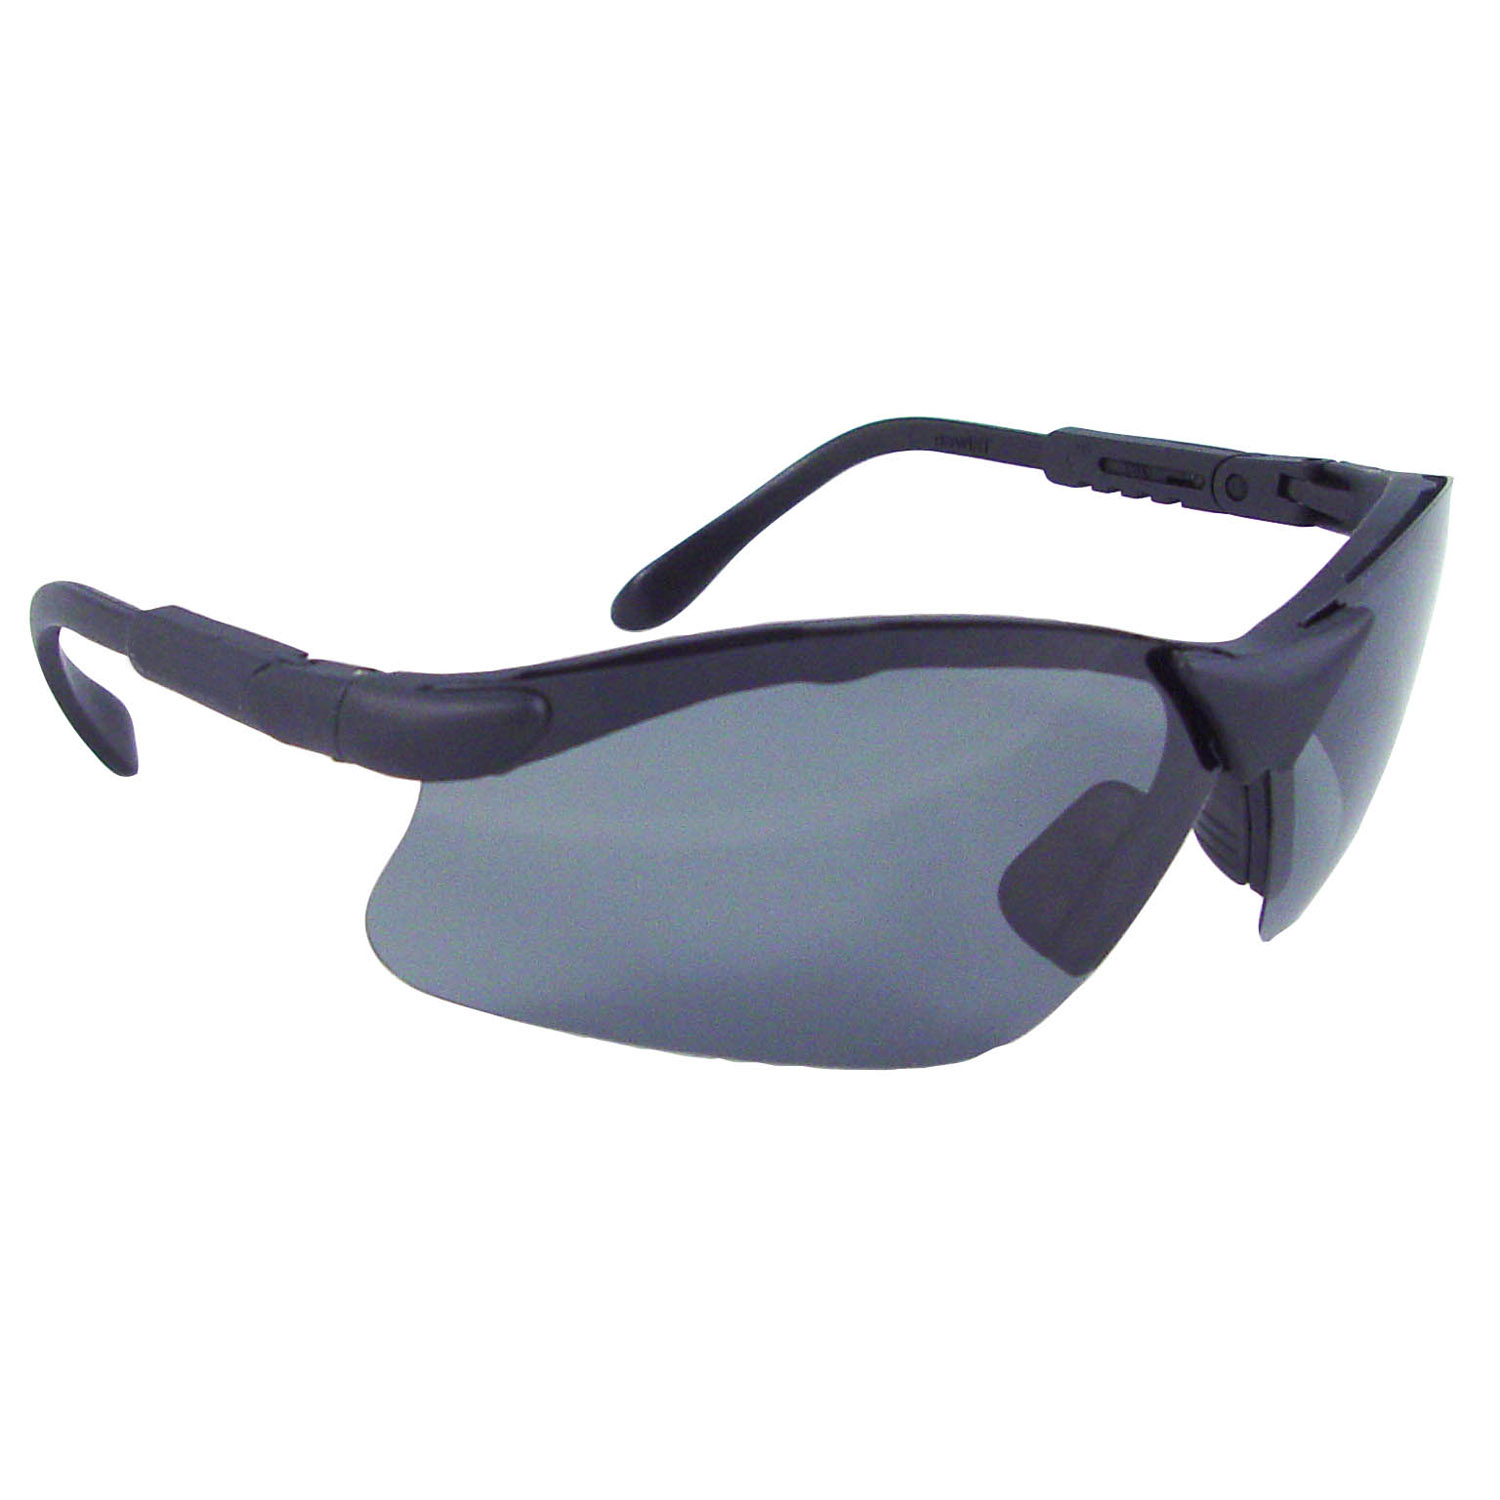 Revelation™ Safety Eyewear - Black Frame - Polarized Smoke Lens - Tinted Lens